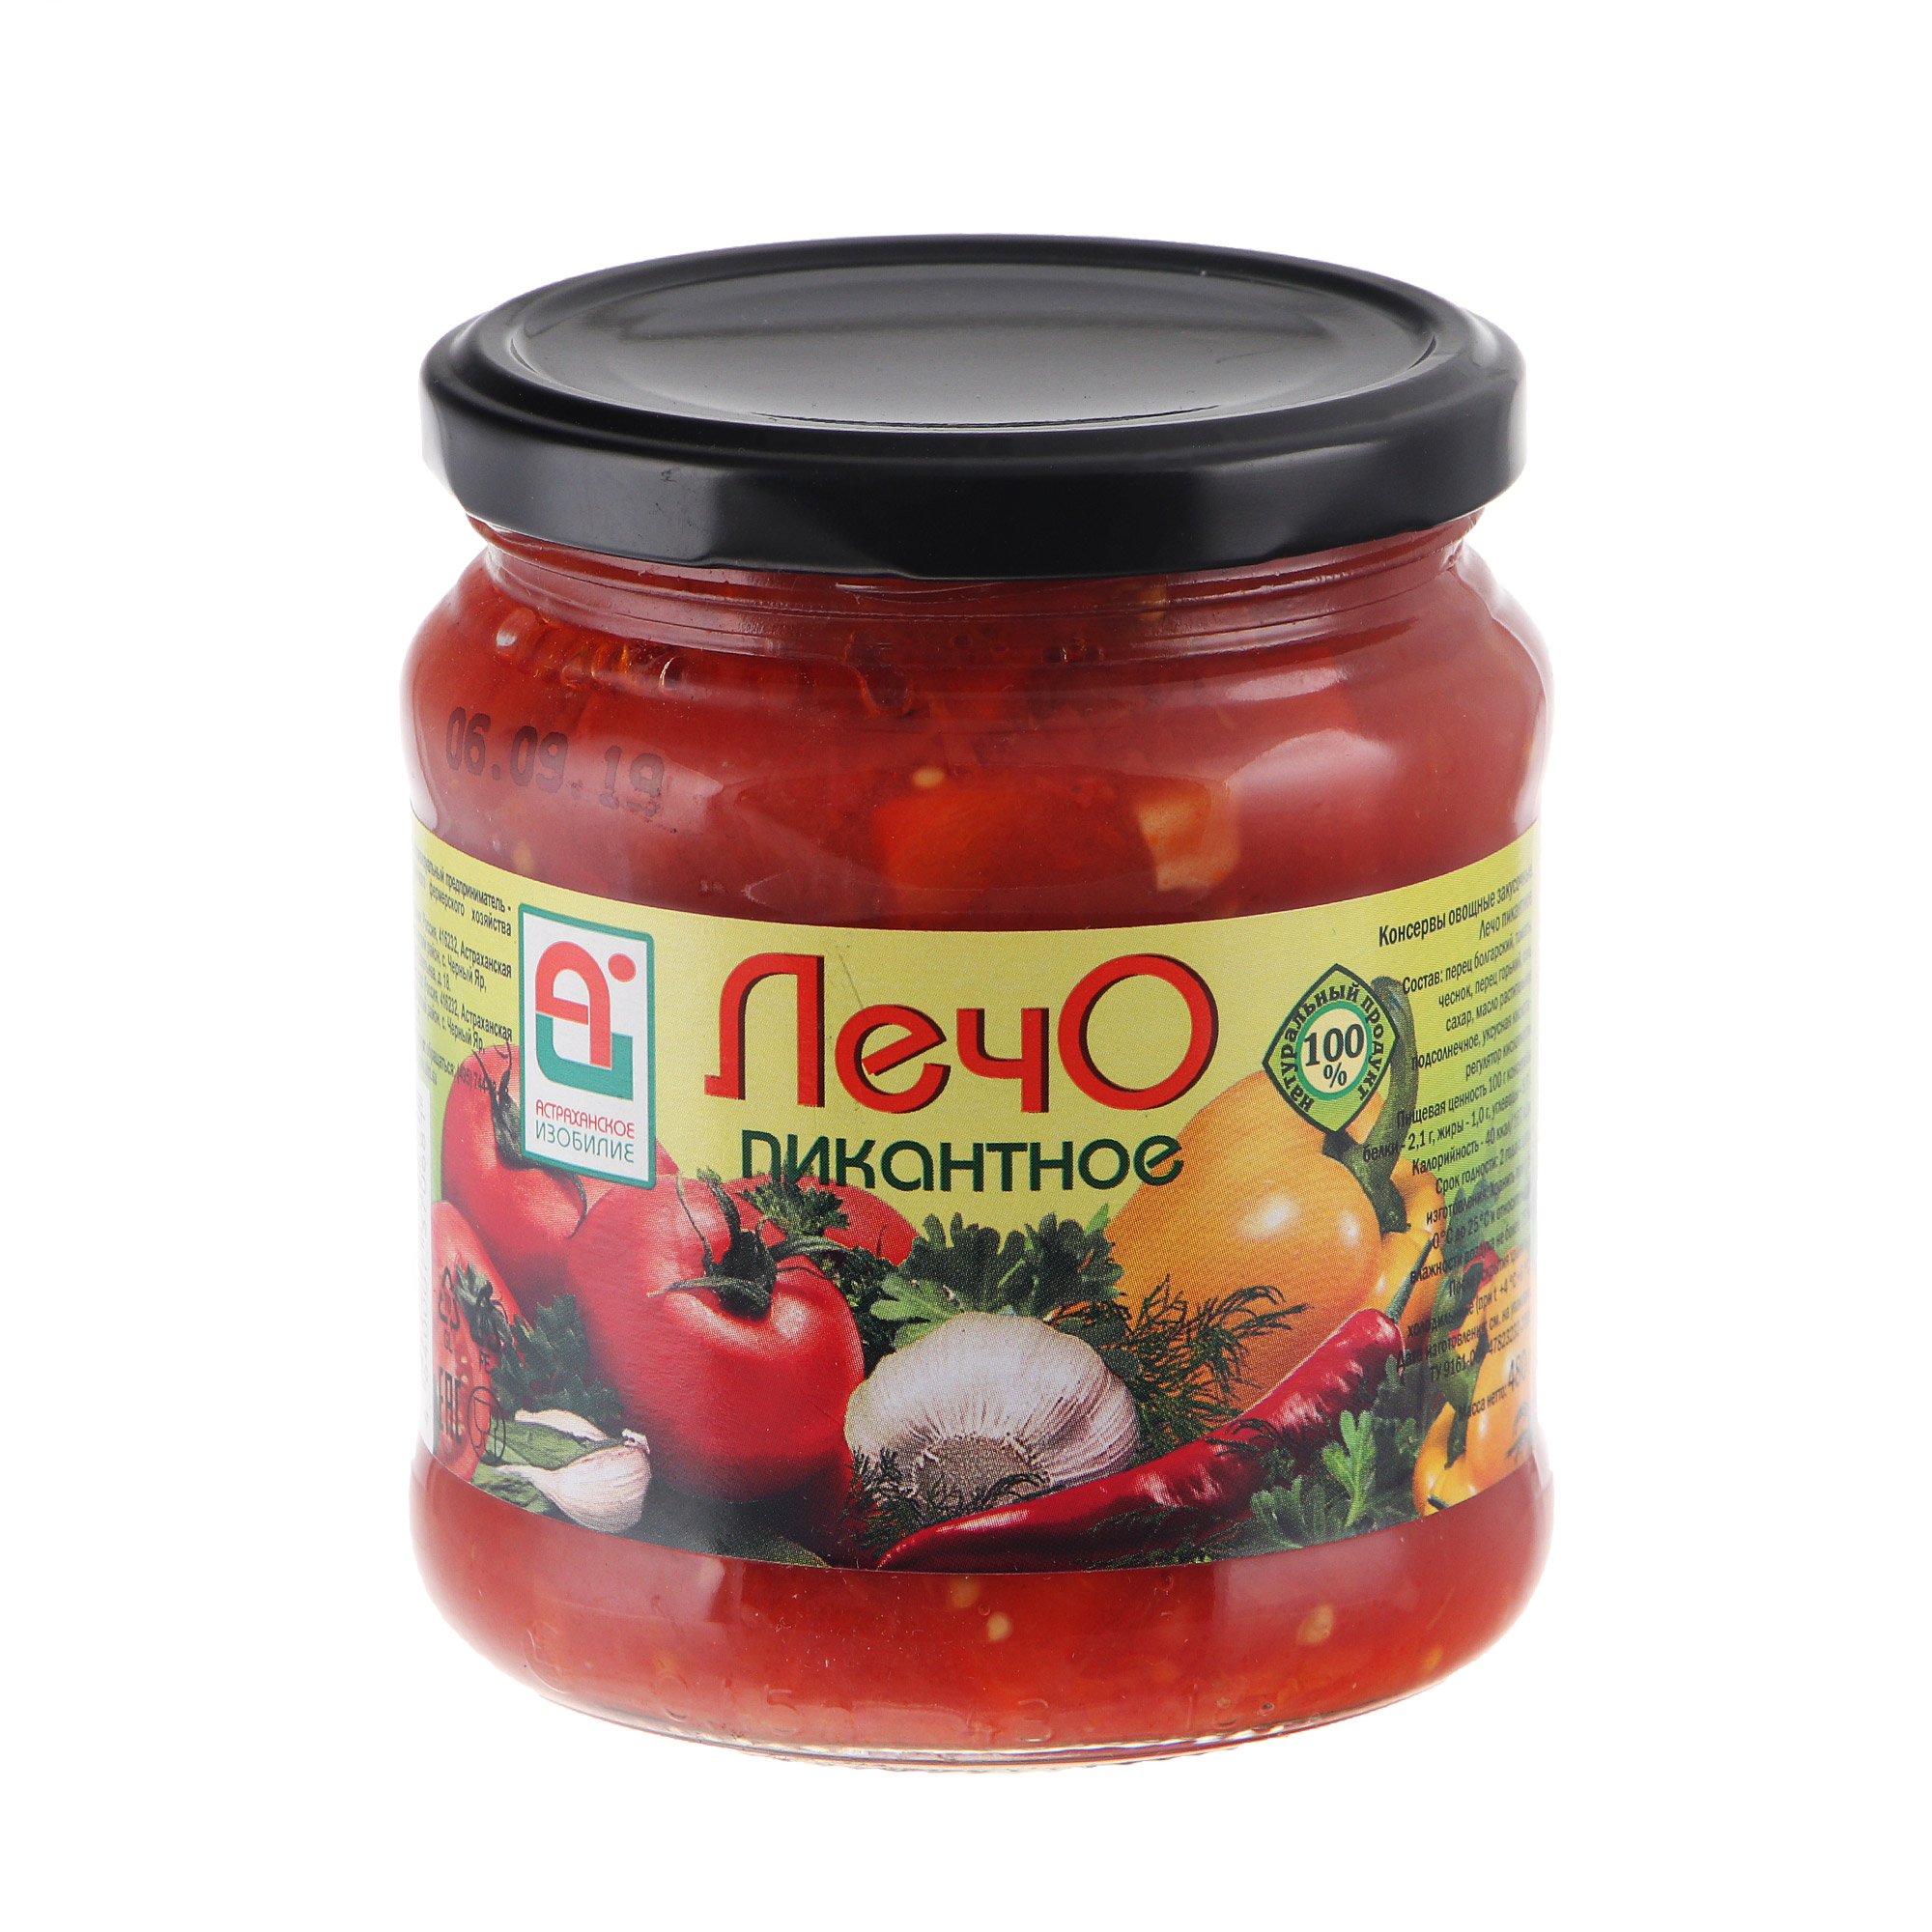 Лечо пикантное Астраханское Изобилие 480 г томаты консервированные астраханское изобилие 1 л